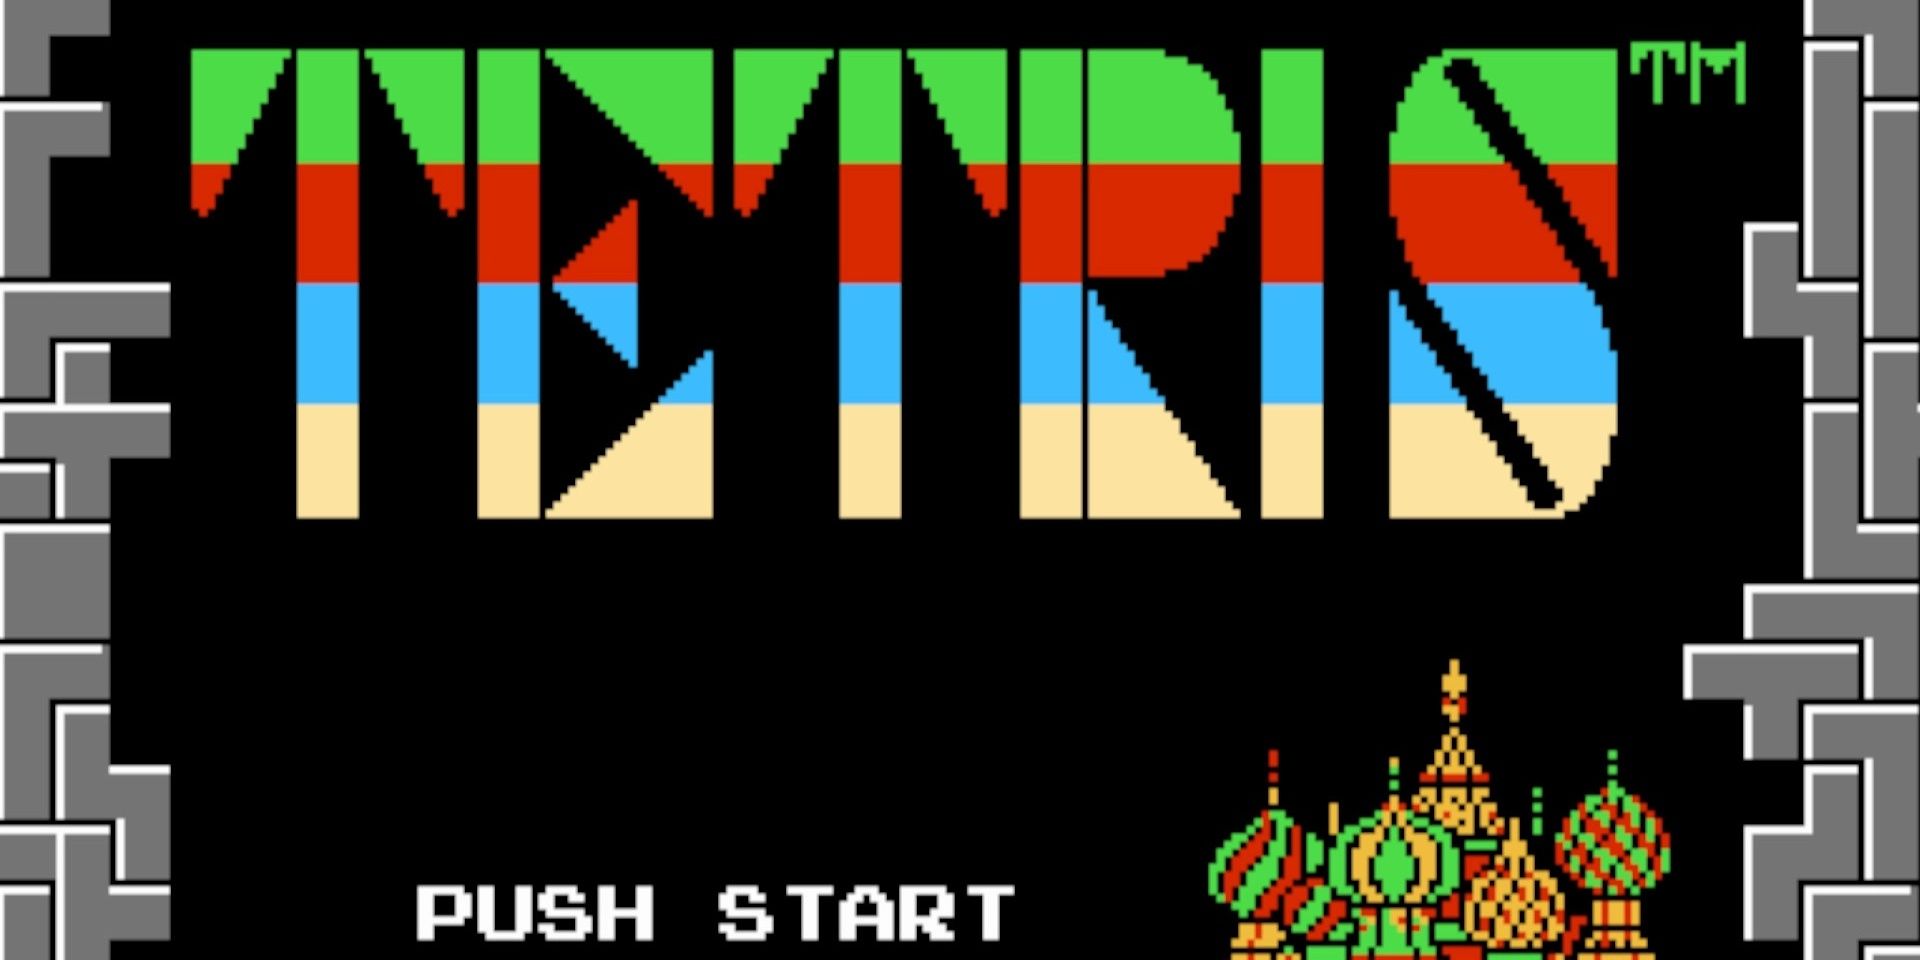 The Original Tetris